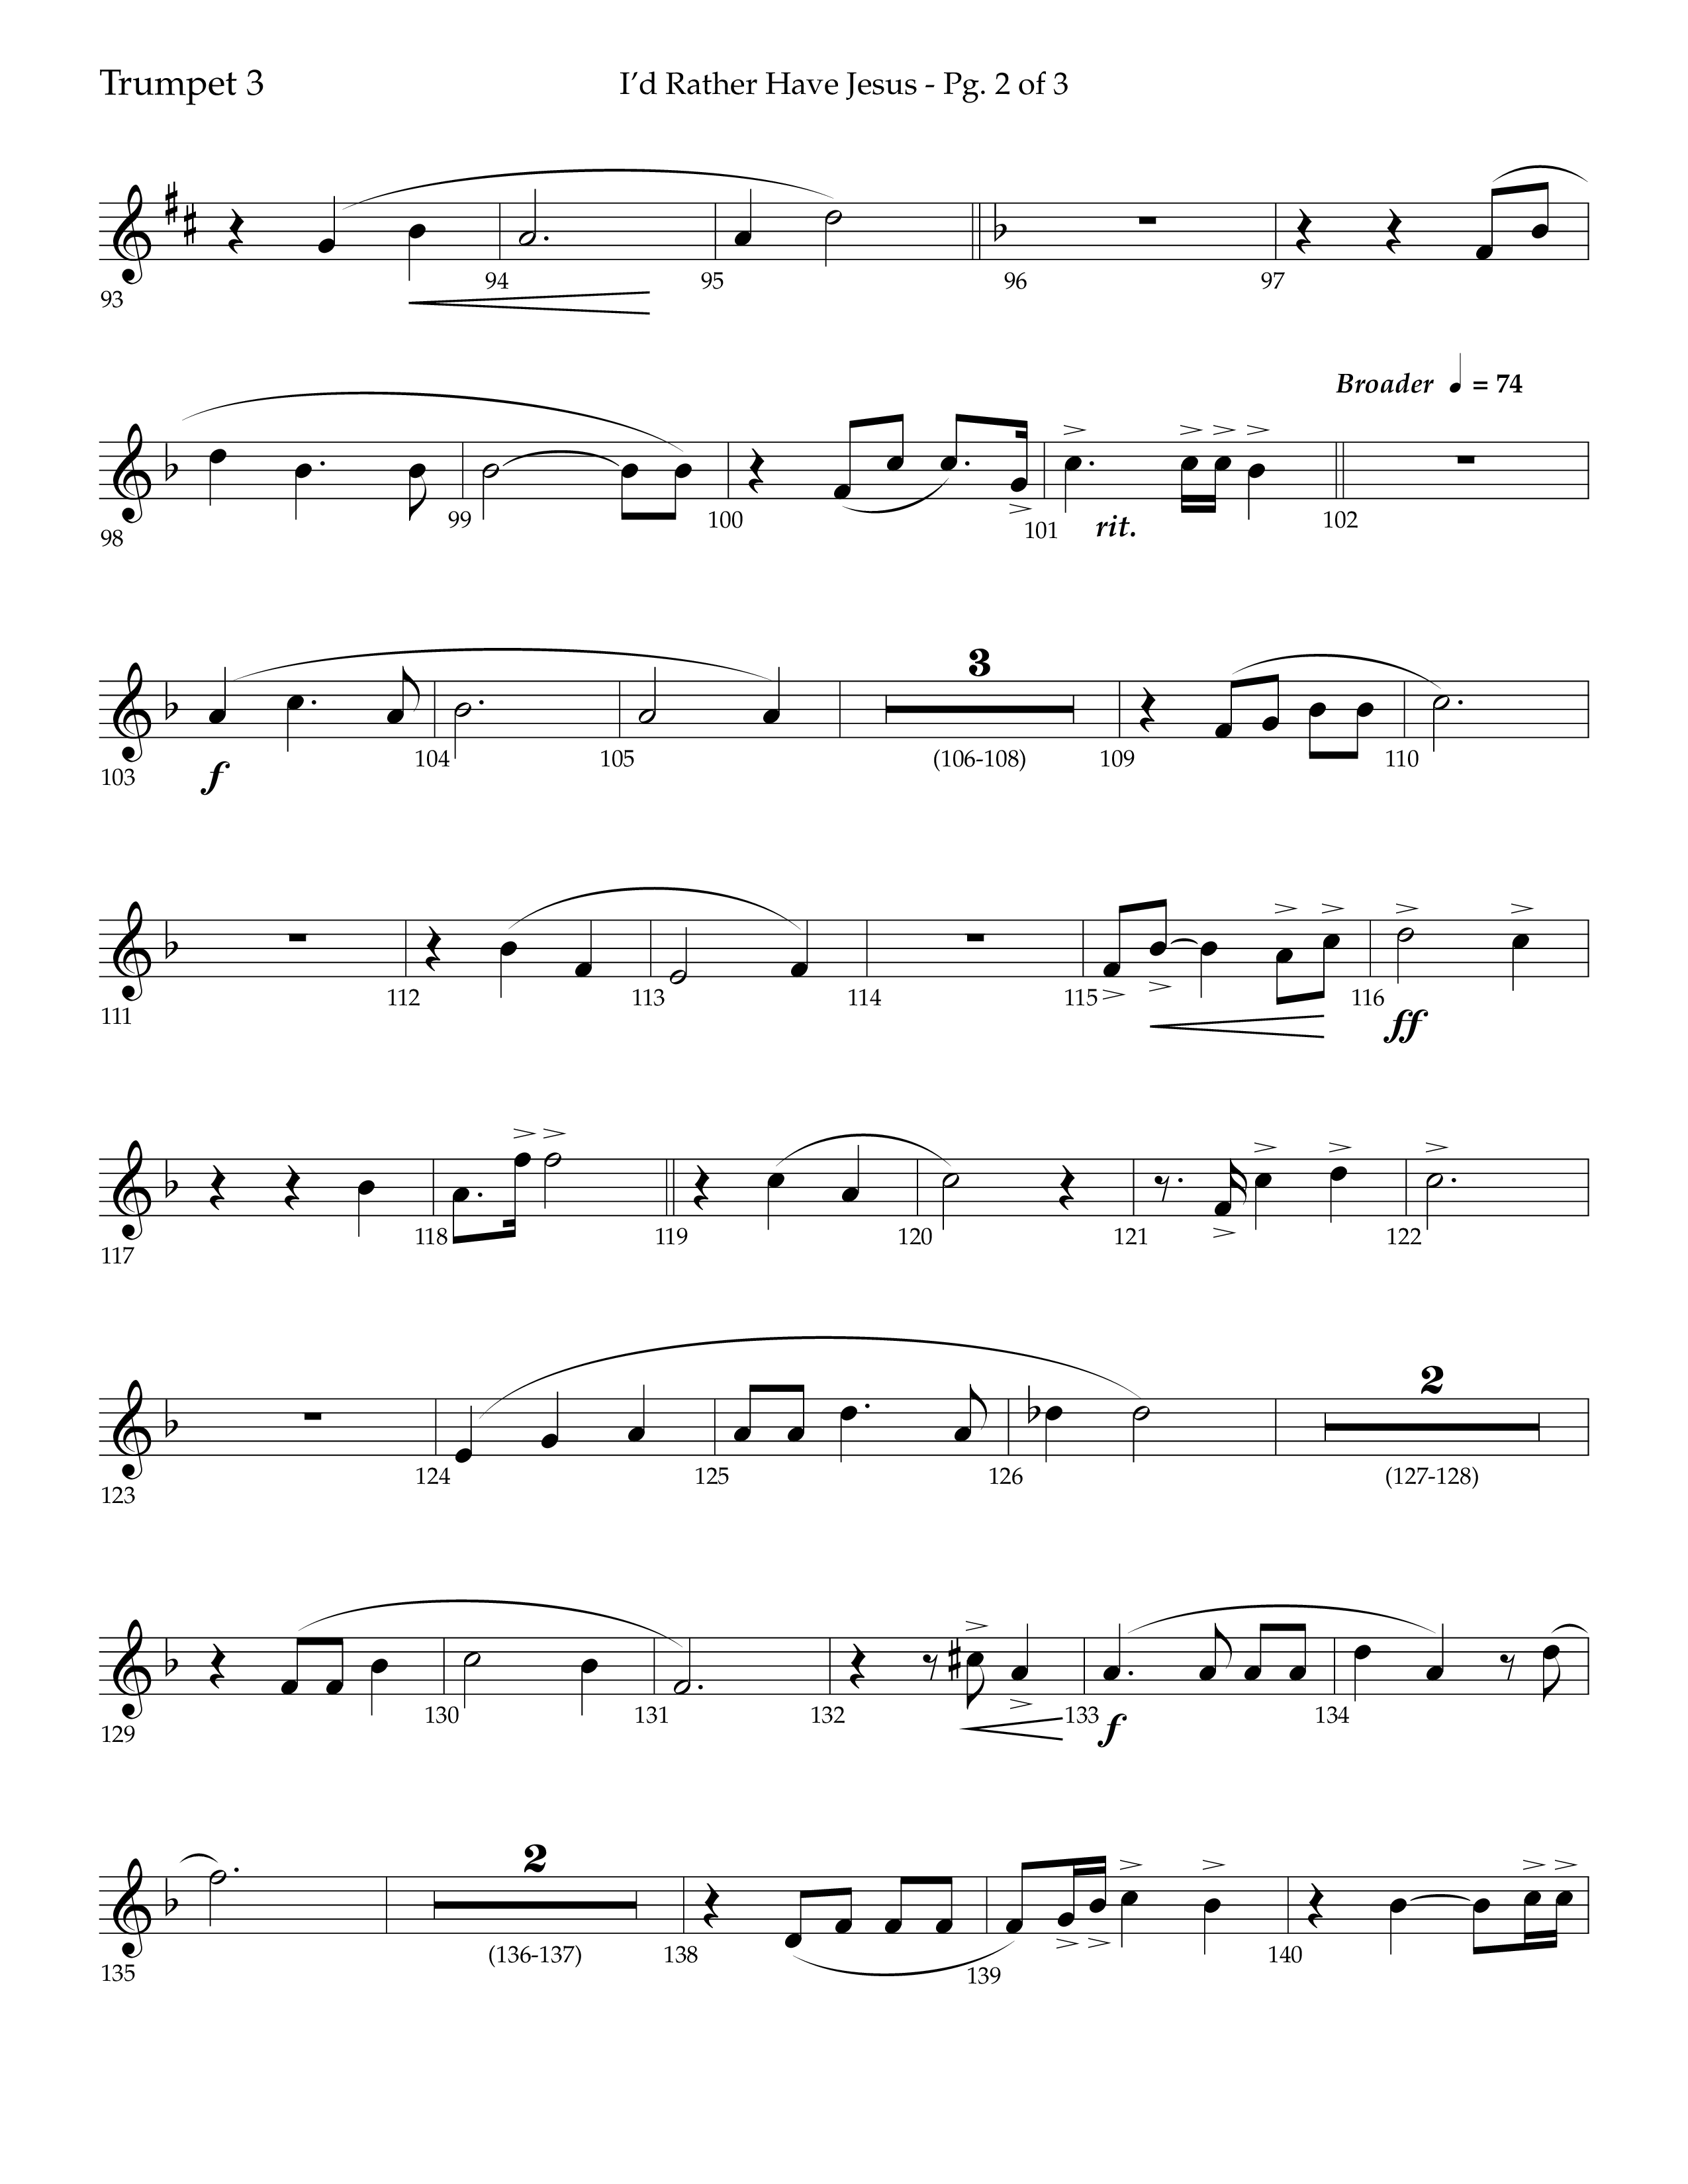 I'd Rather Have Jesus (Choral Anthem SATB) Trumpet 3 (Lifeway Choral / Arr. Richard Kingsmore)